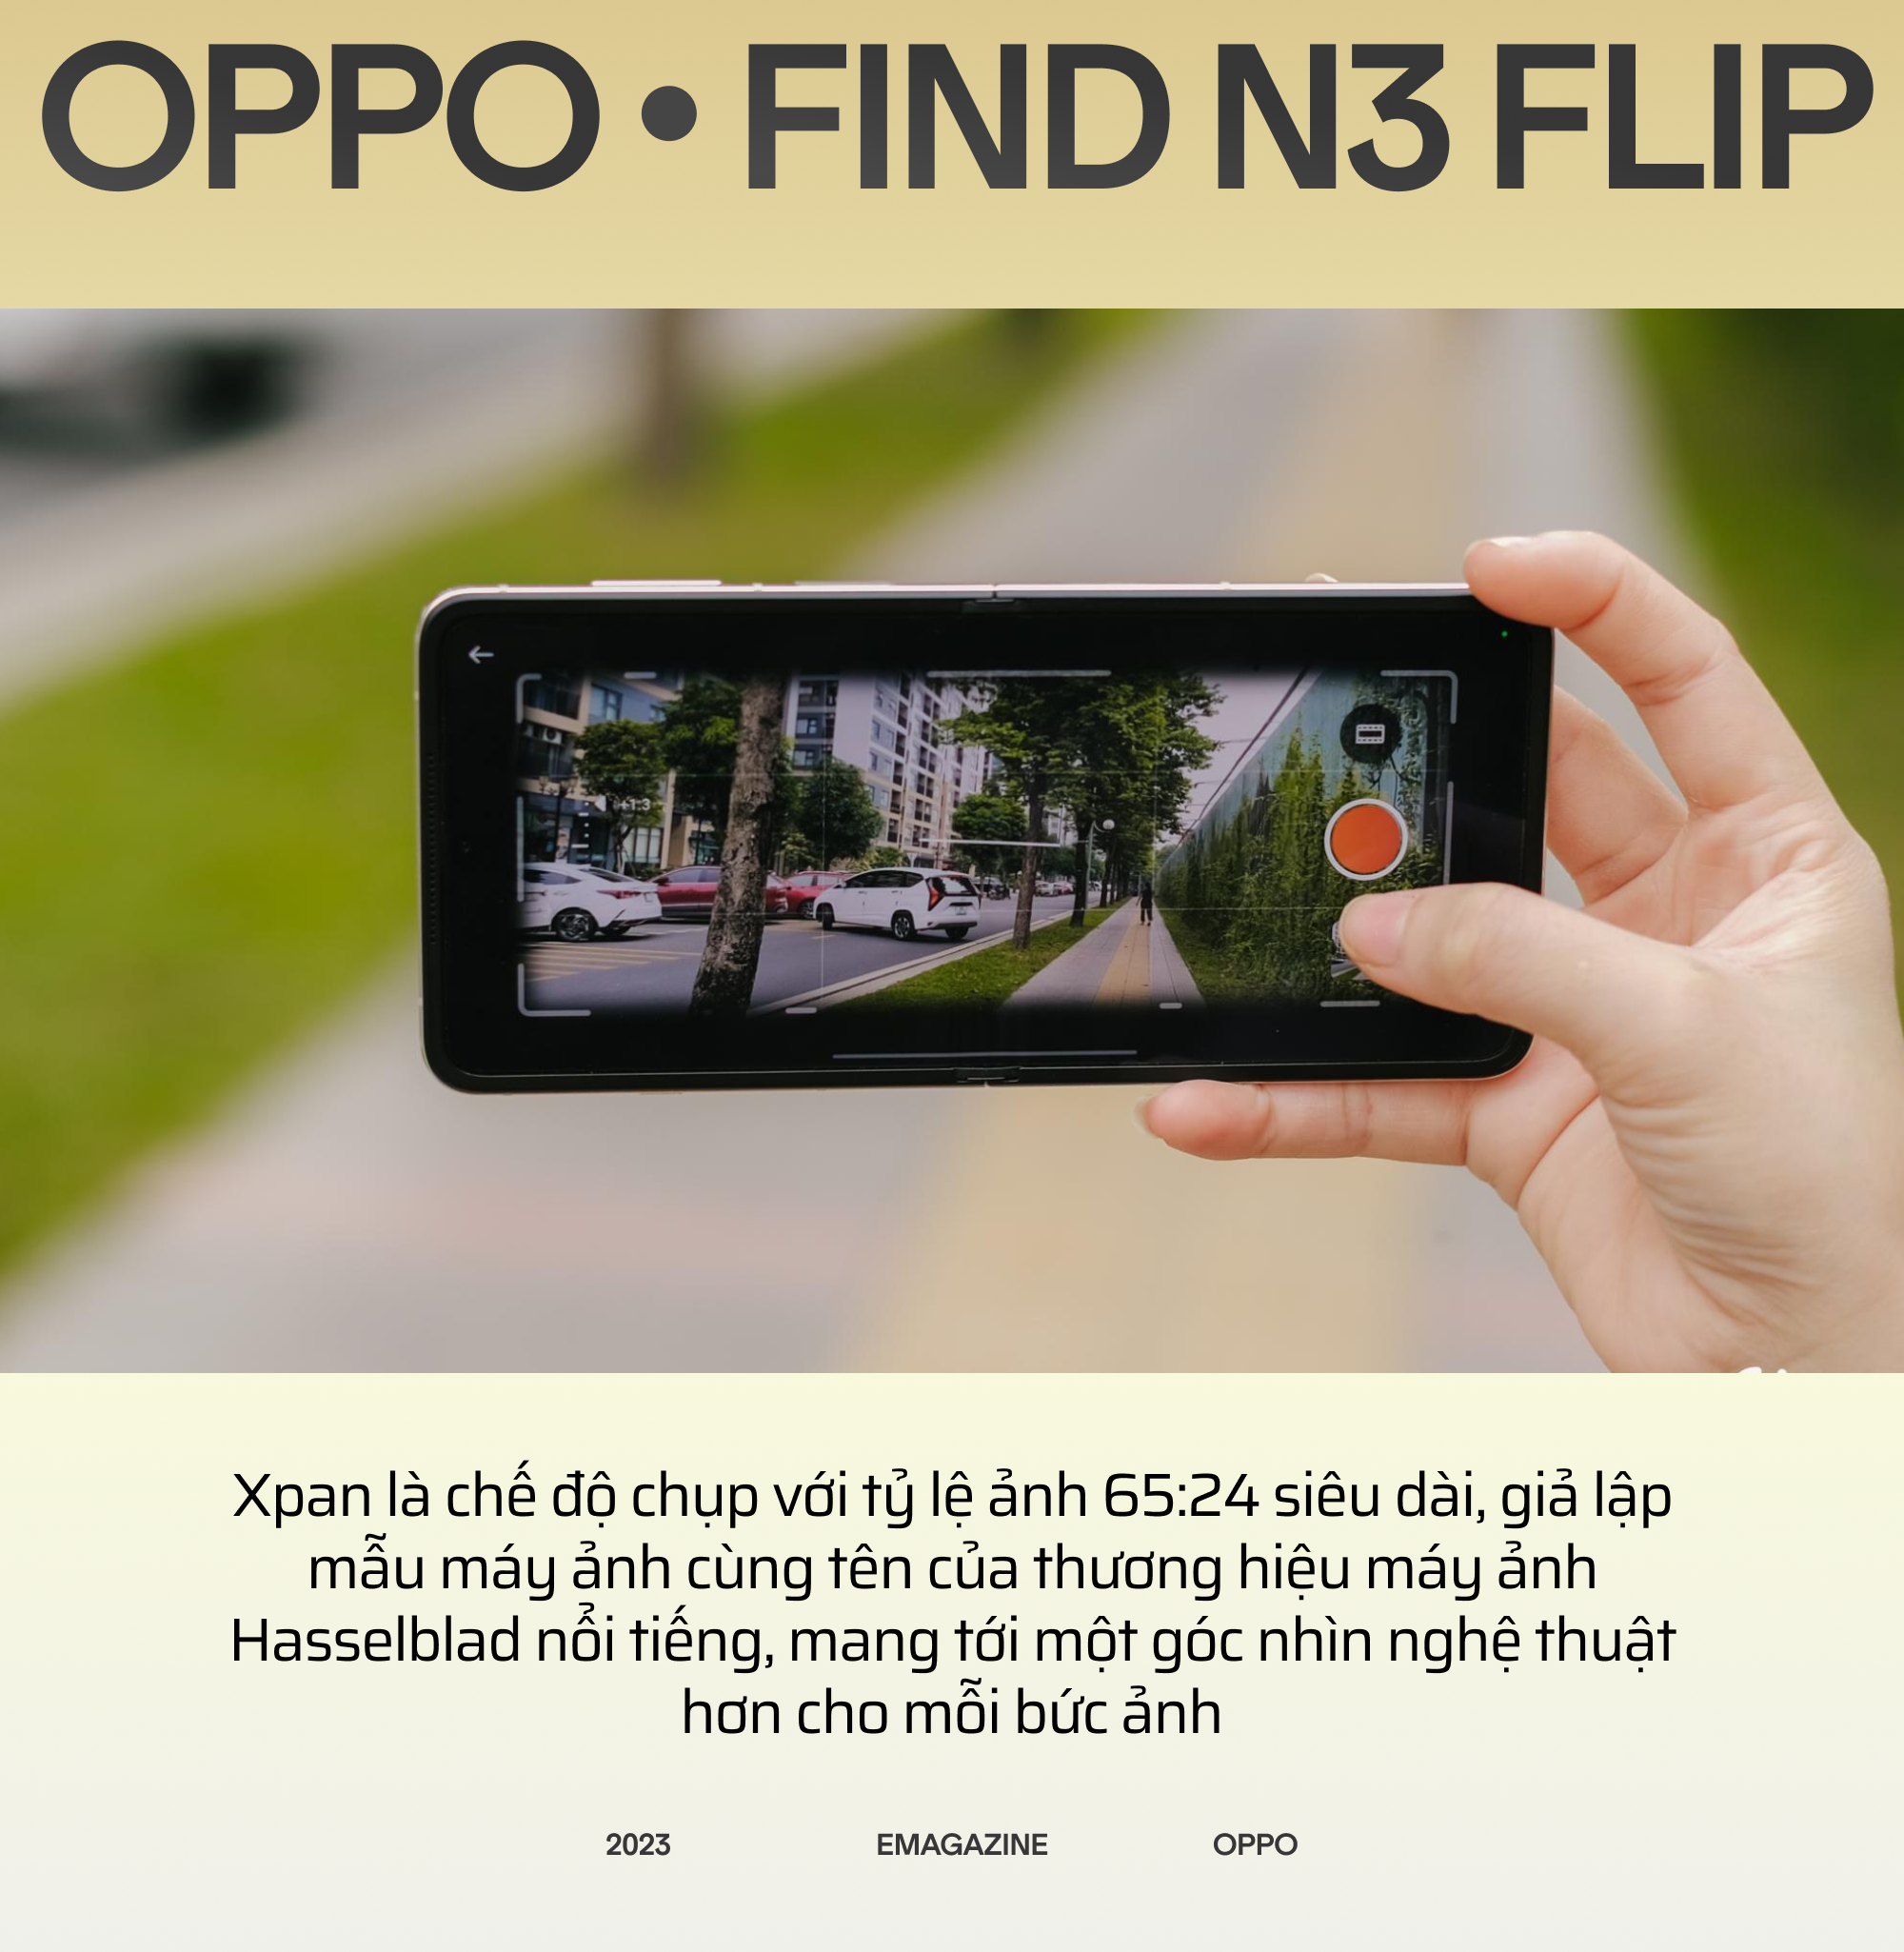 OPPO Find N3 Flip và hành trình đi tìm chiếc smartphone gập toàn diện - Ảnh 24.